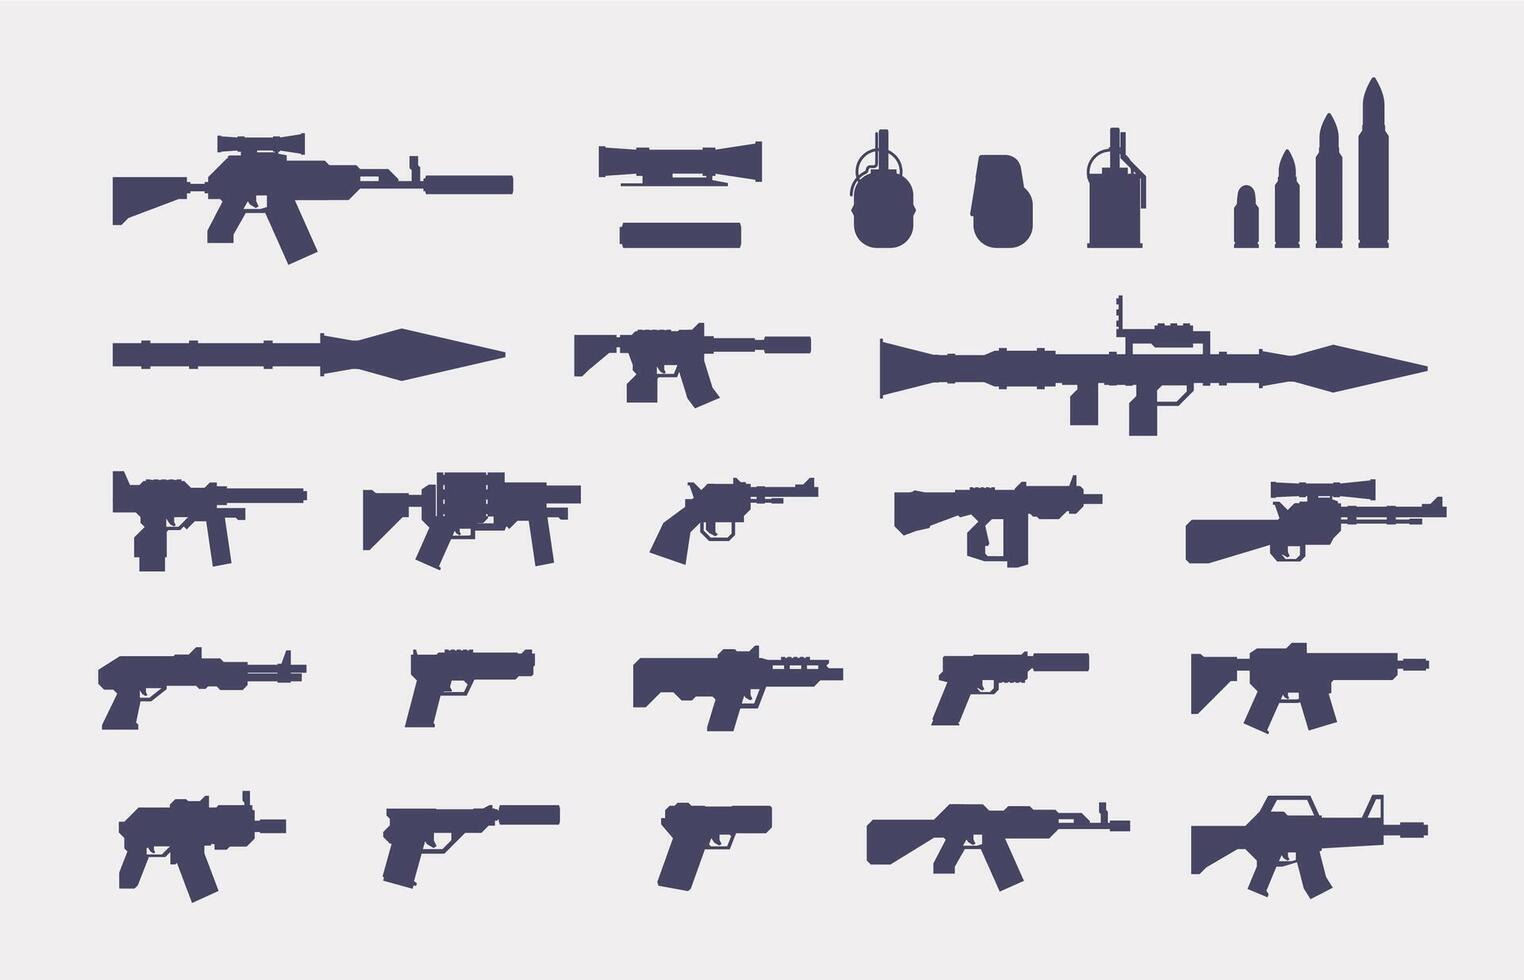 pistolas silueta. militar armas de fuego íconos para rpg diseño, Ejército arsenal arma y munición, pistola escopeta granada revólver lanzacohetes. vector plano conjunto